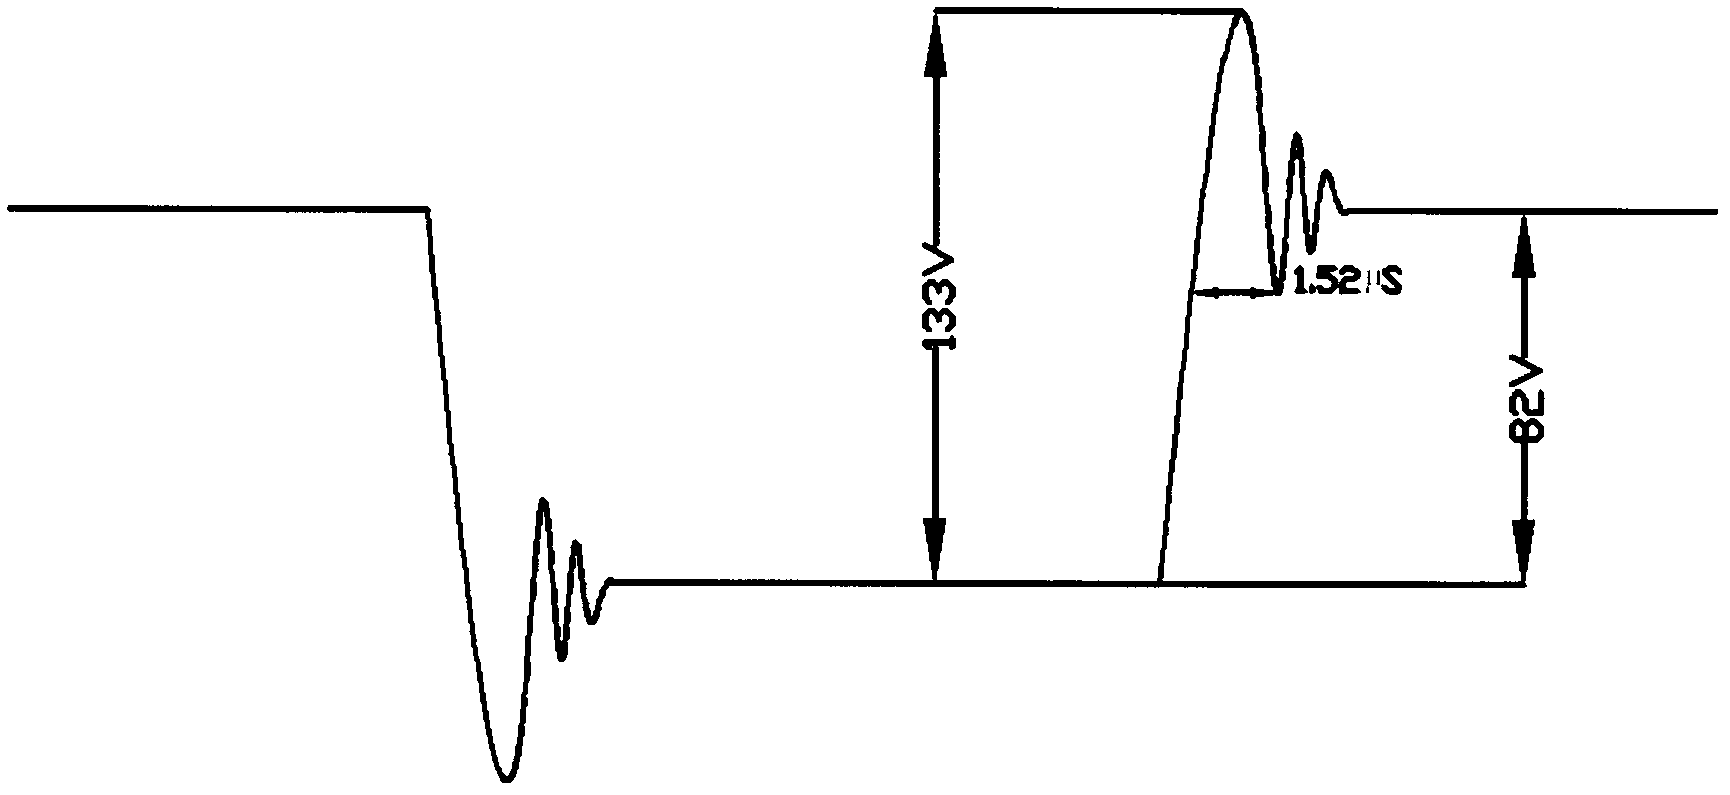 Coupling peak absorption circuit at input end of motor